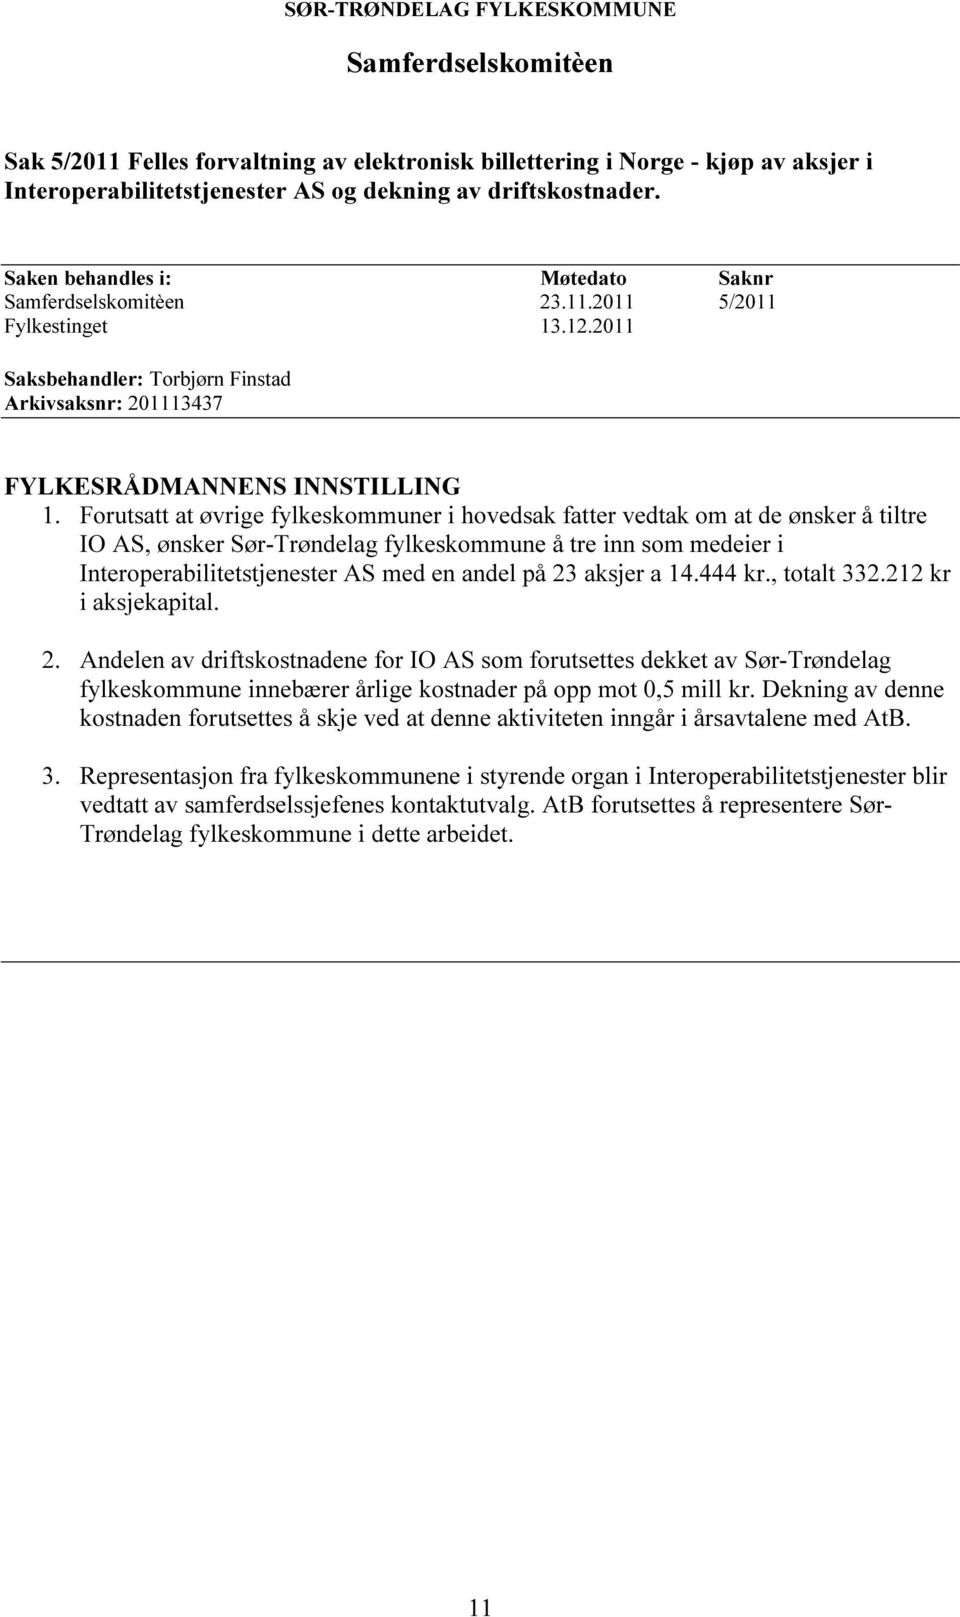 Forutsatt at øvrige fylkeskommuner i hovedsak fatter vedtak om at de ønsker å tiltre IO AS, ønsker Sør-Trøndelag fylkeskommune å tre inn som medeier i Interoperabilitetstjenester AS med en andel på